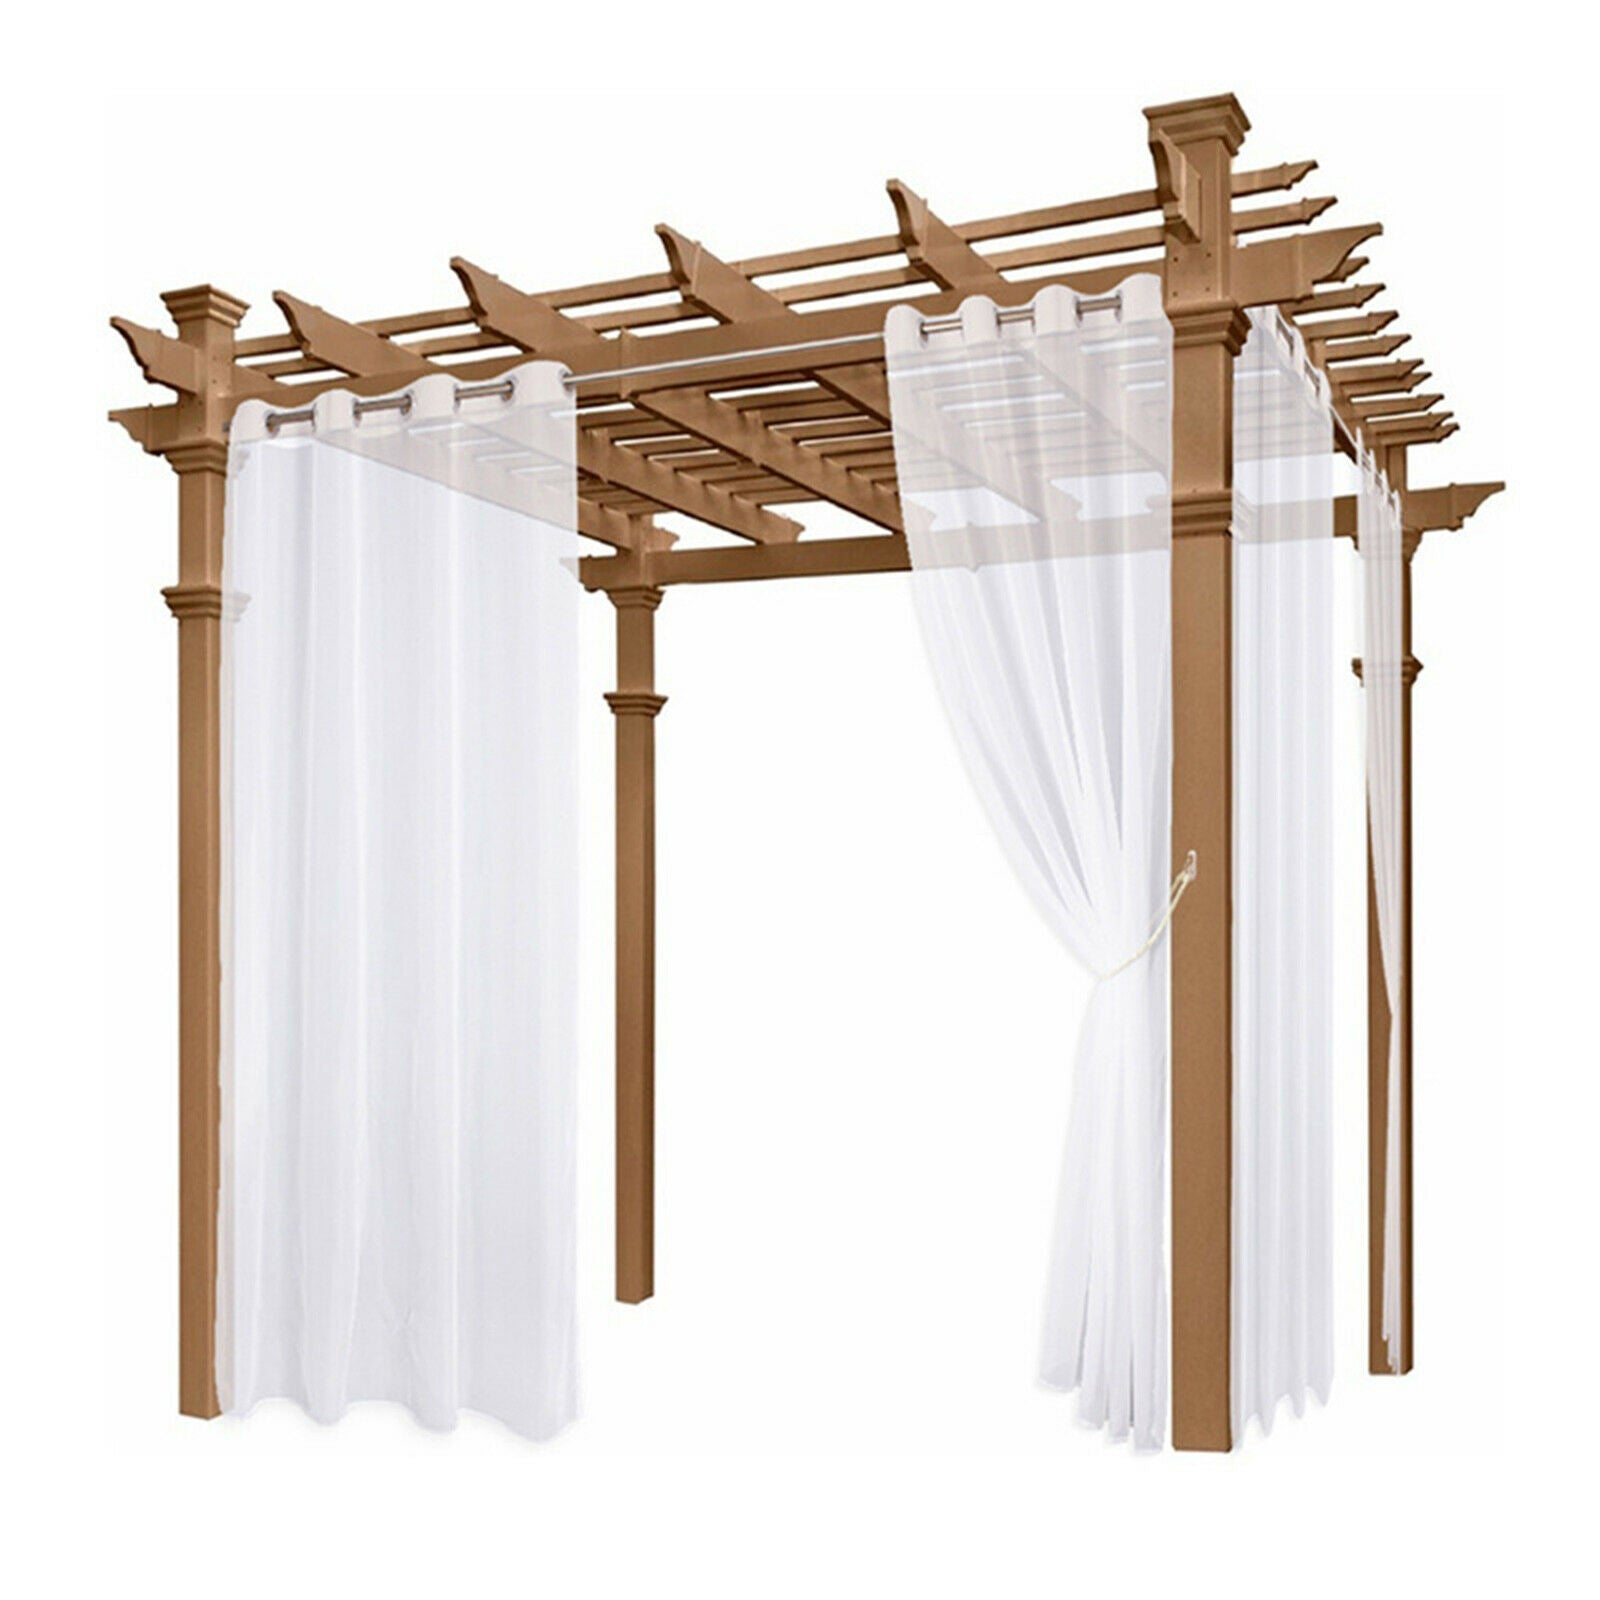 3Pcs Sheer Curtain Porch Deck Canopy Patio Drape Privacy Voile Decoration